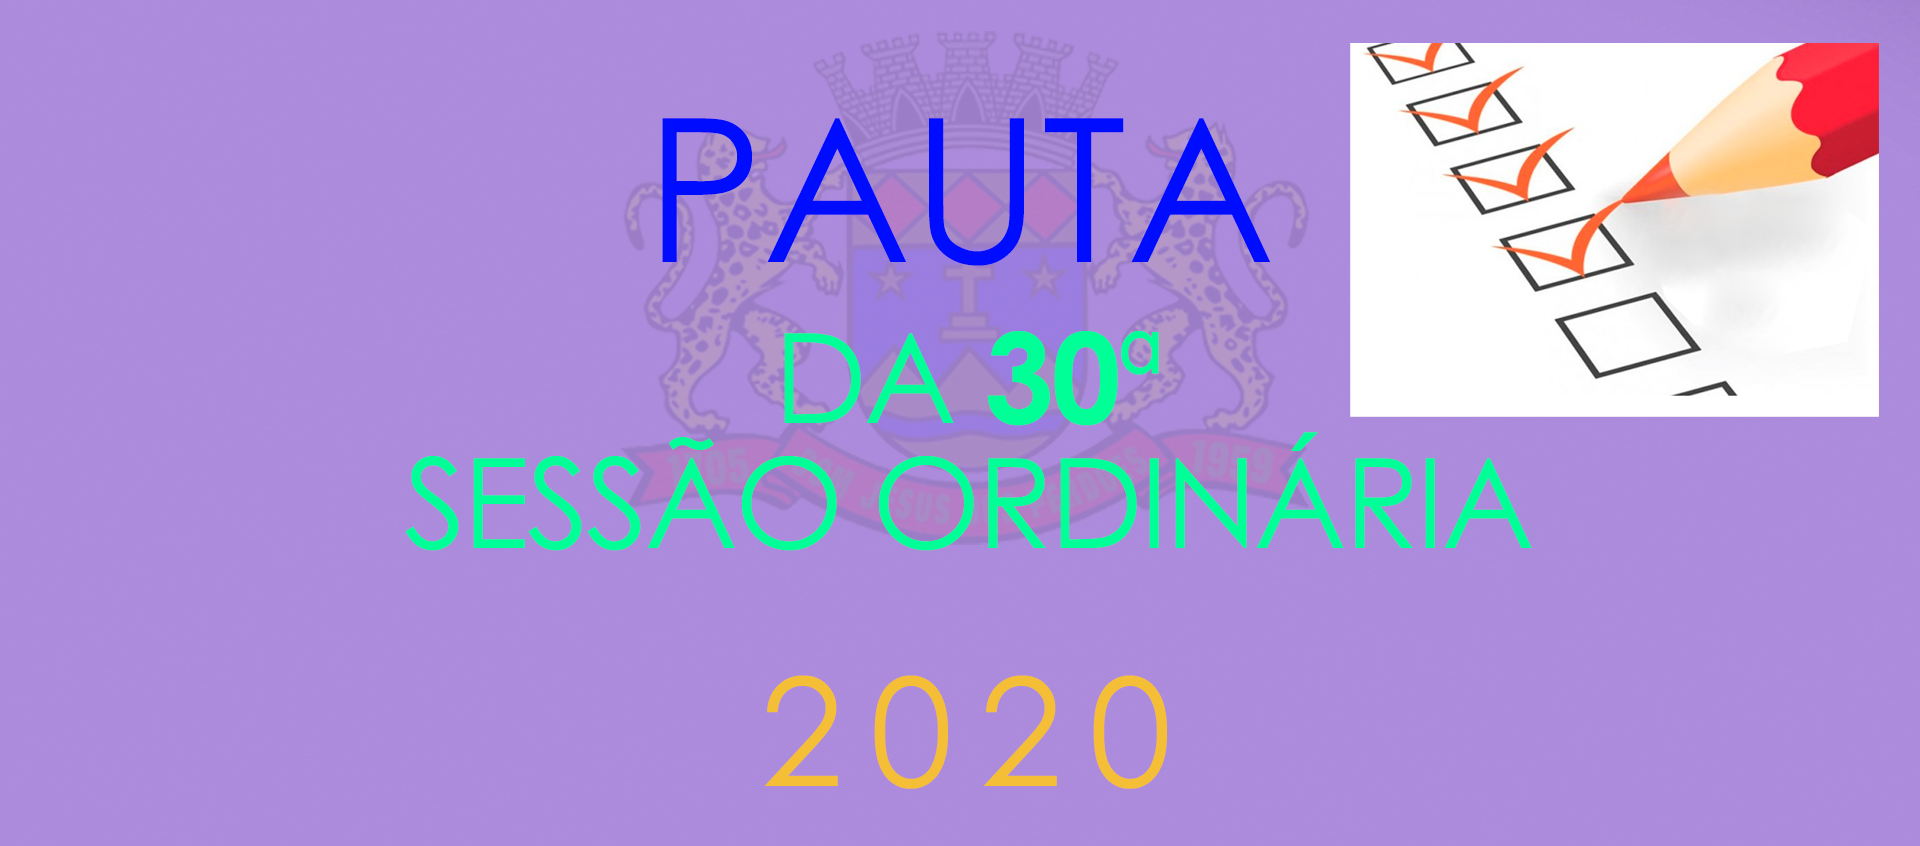 Pauta da 30ª Sessão Ordinária - 2020